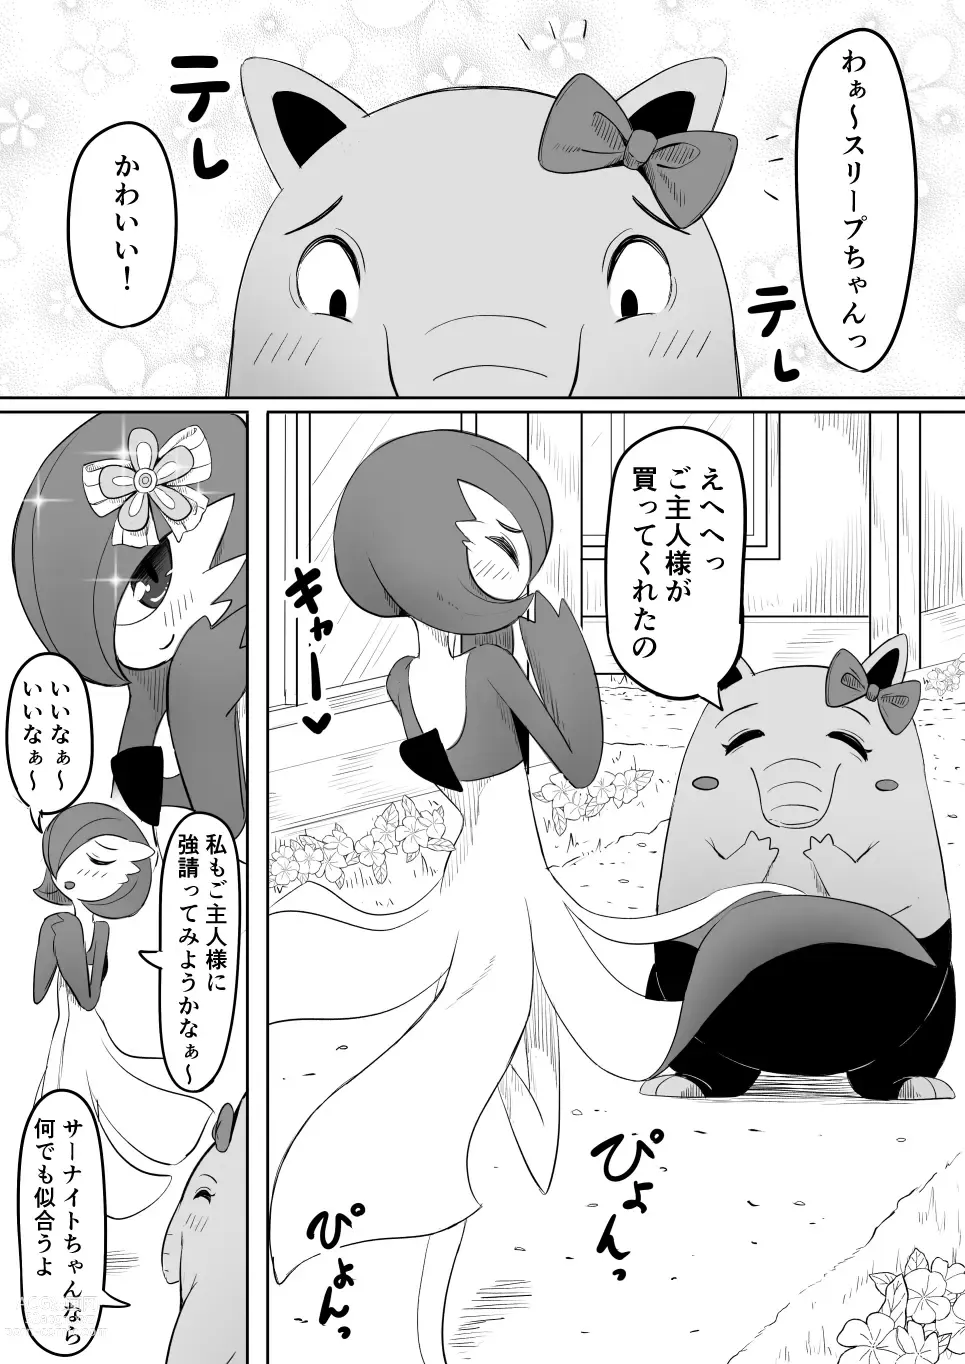 Page 6 of doujinshi Koi o Shita Sleeper-chan.